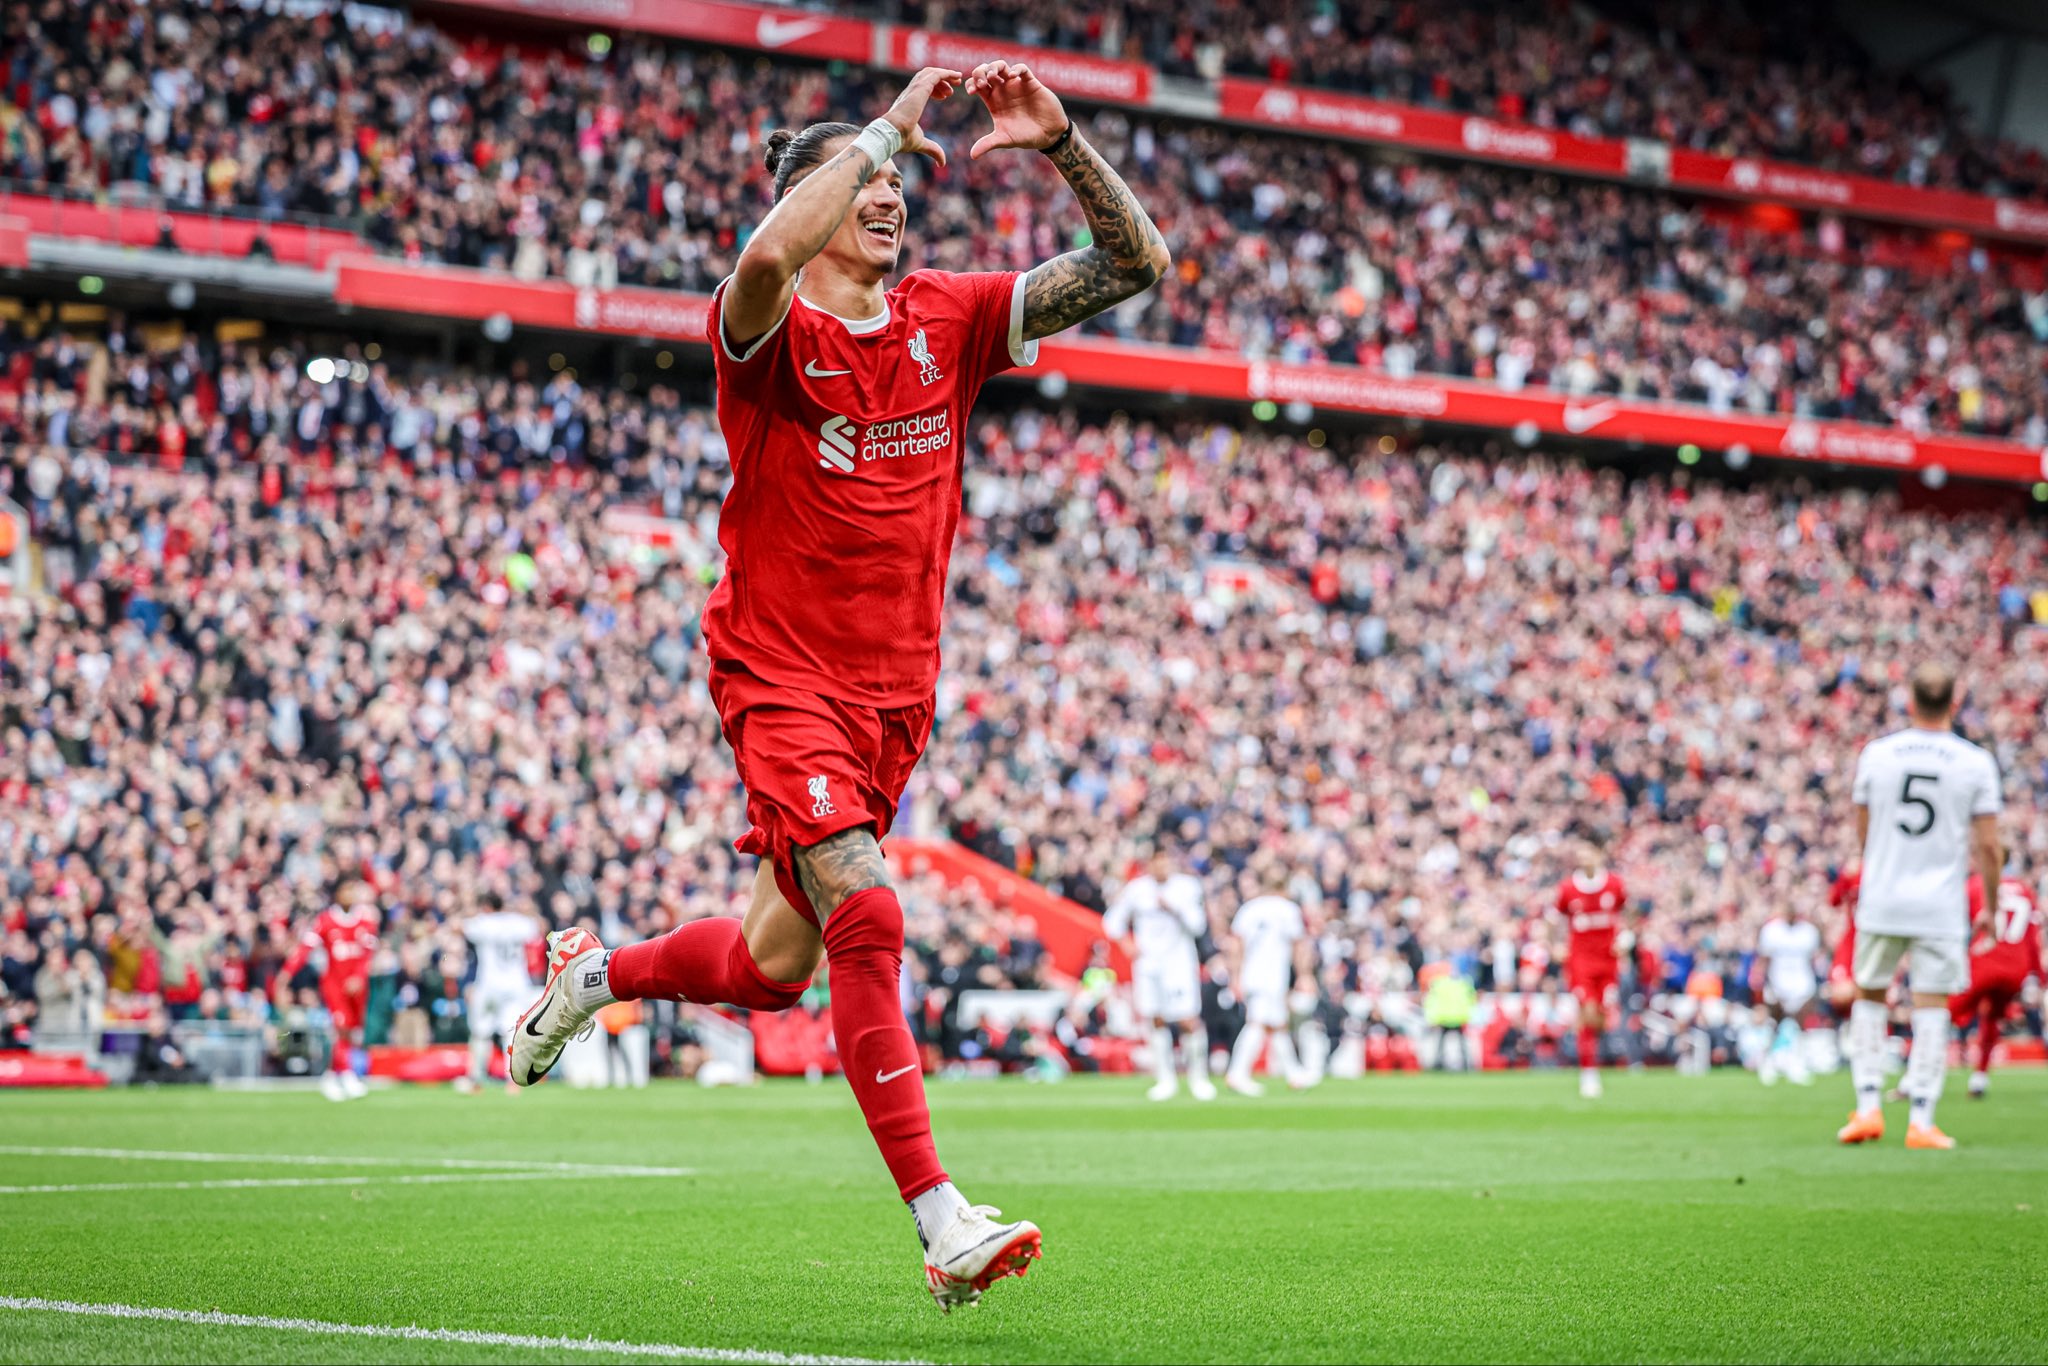 Darwin Núñez enmarca otra victoria del Liverpool